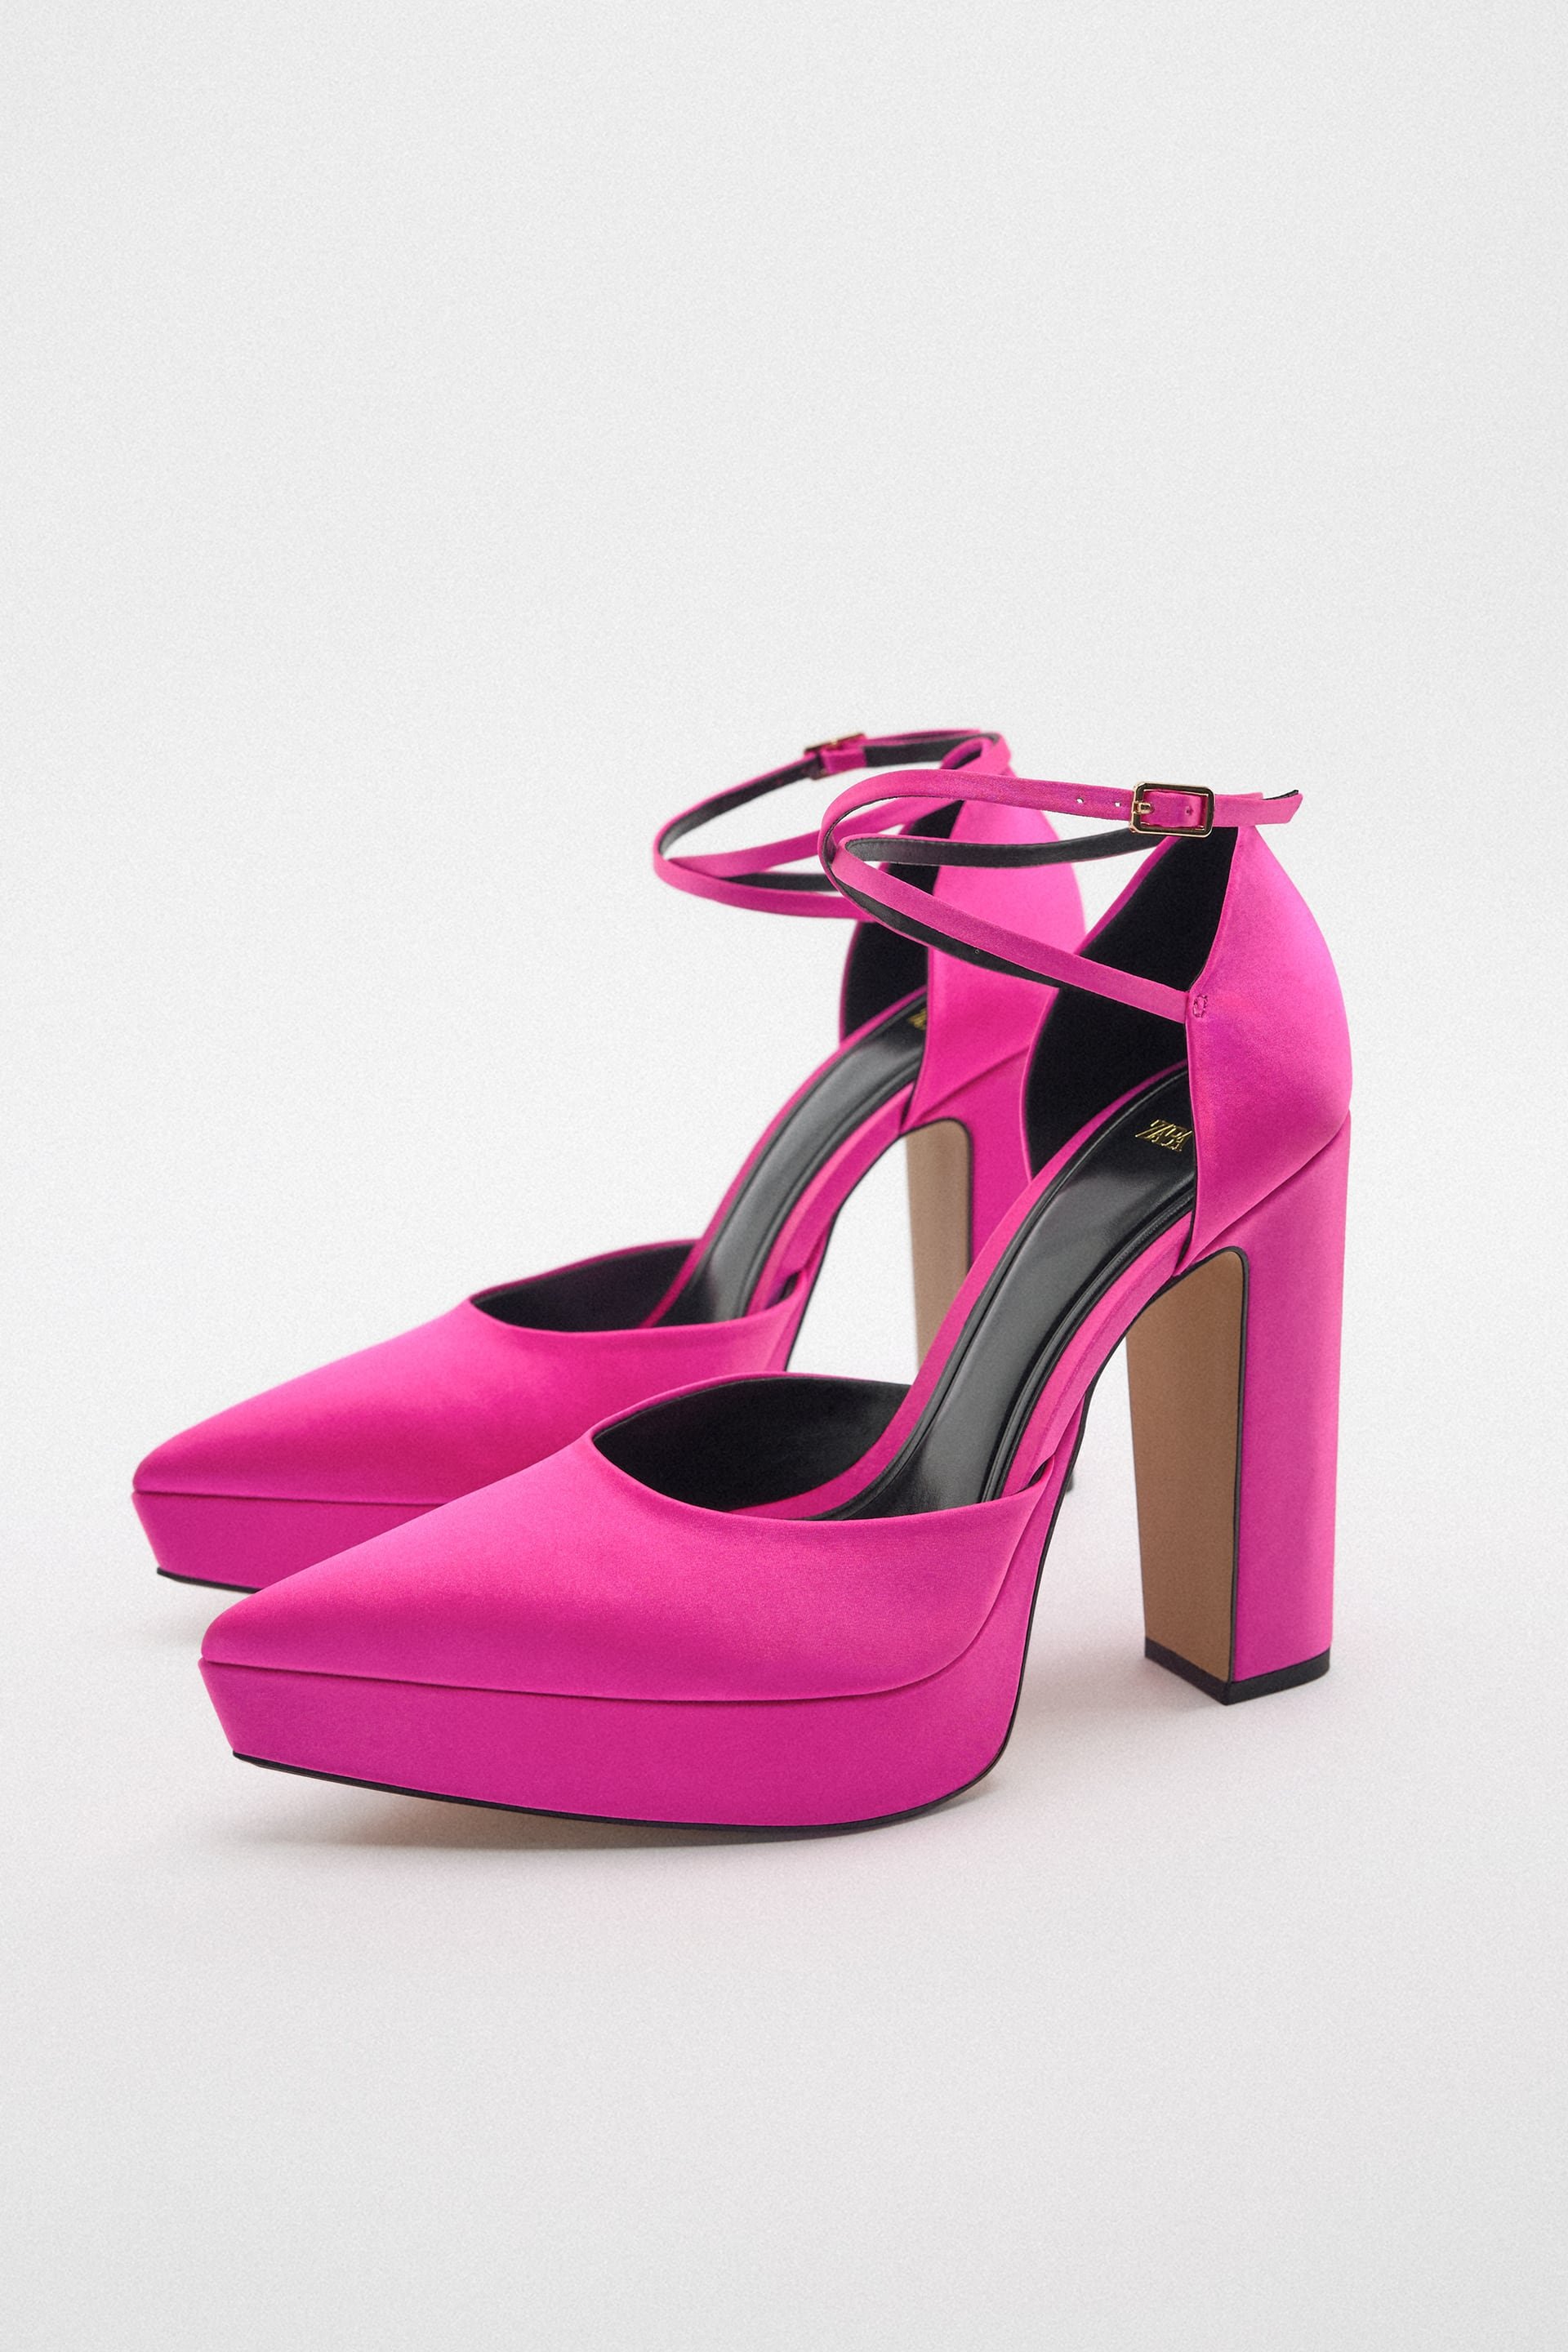 Zara Pink Platforms.jpg